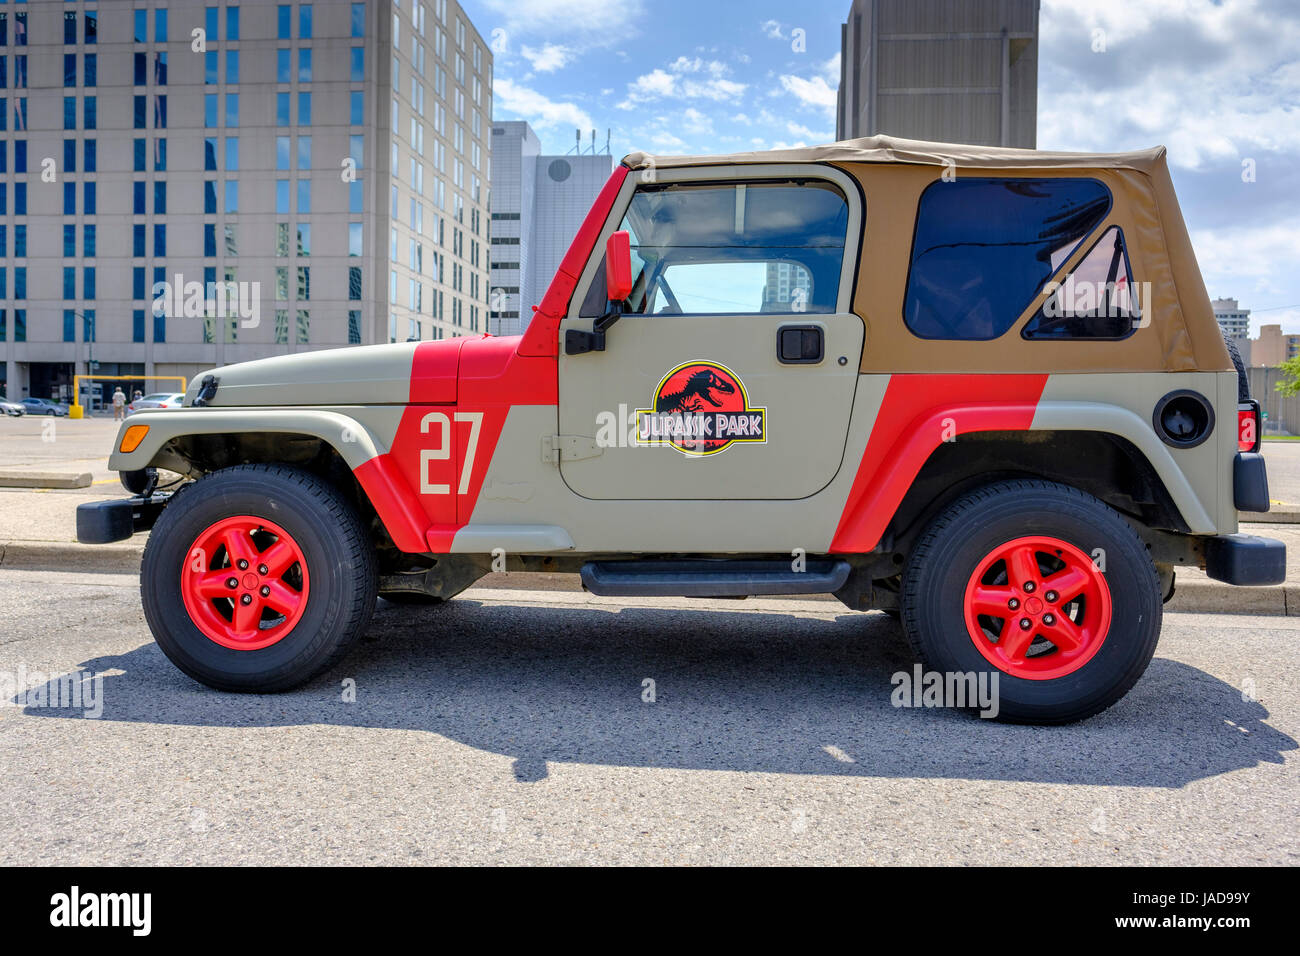 Benutzerdefinierte lackiert Jurassic Park Jeep, Jurassic Park logo, Fahrzeug 4x4, Geländewagen, Jeep, einer Art, London, Ontario, Kanada. Stockfoto